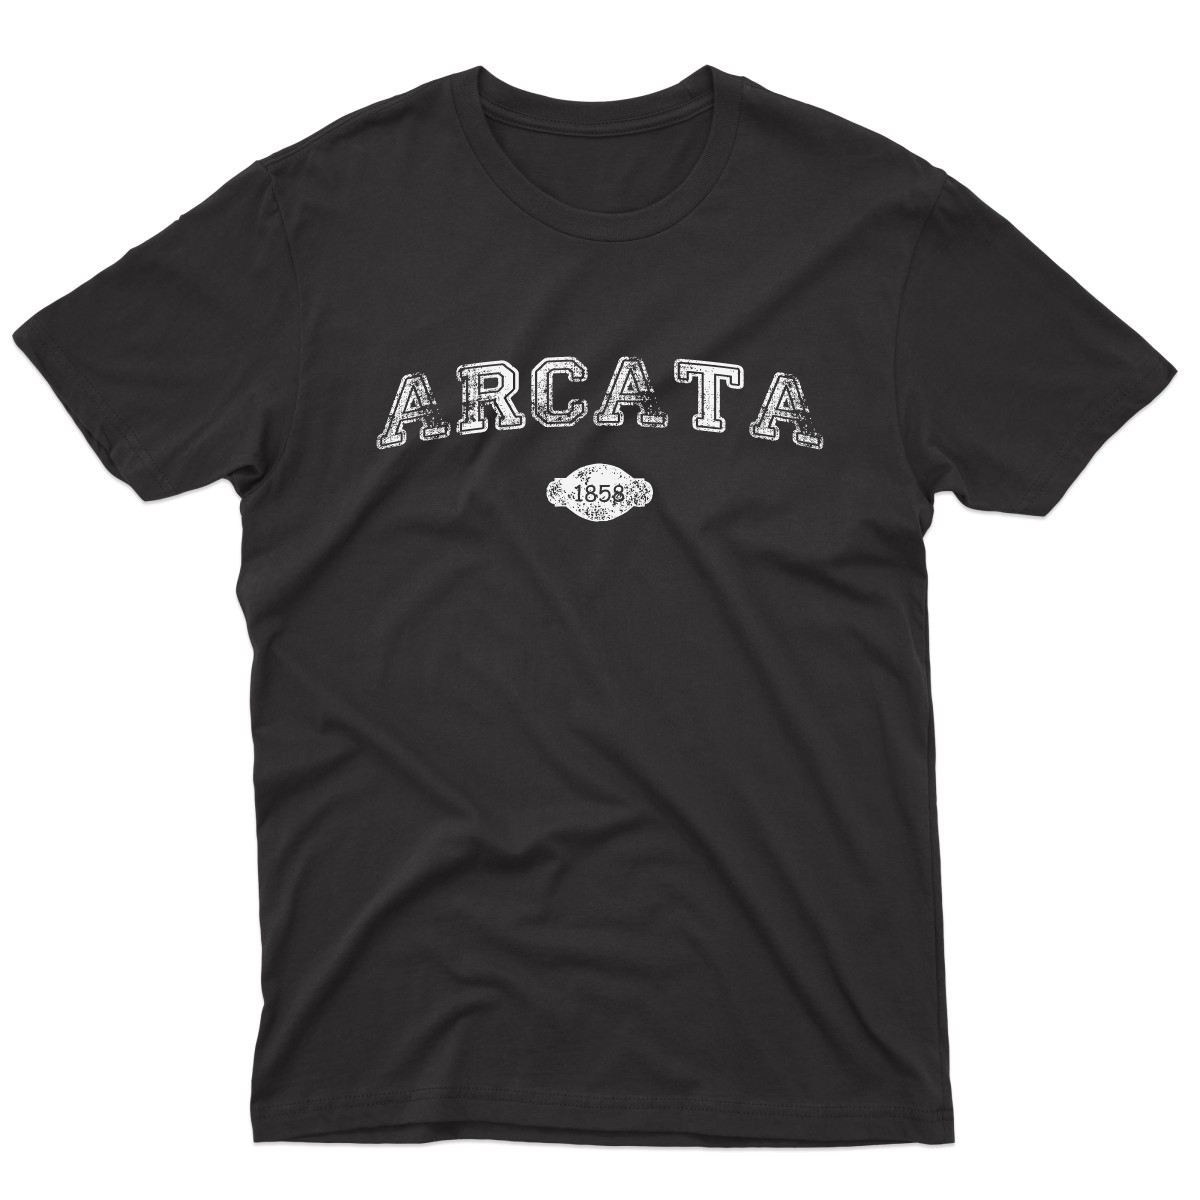 Arcata 1858 Represent Men's T-shirt | Black